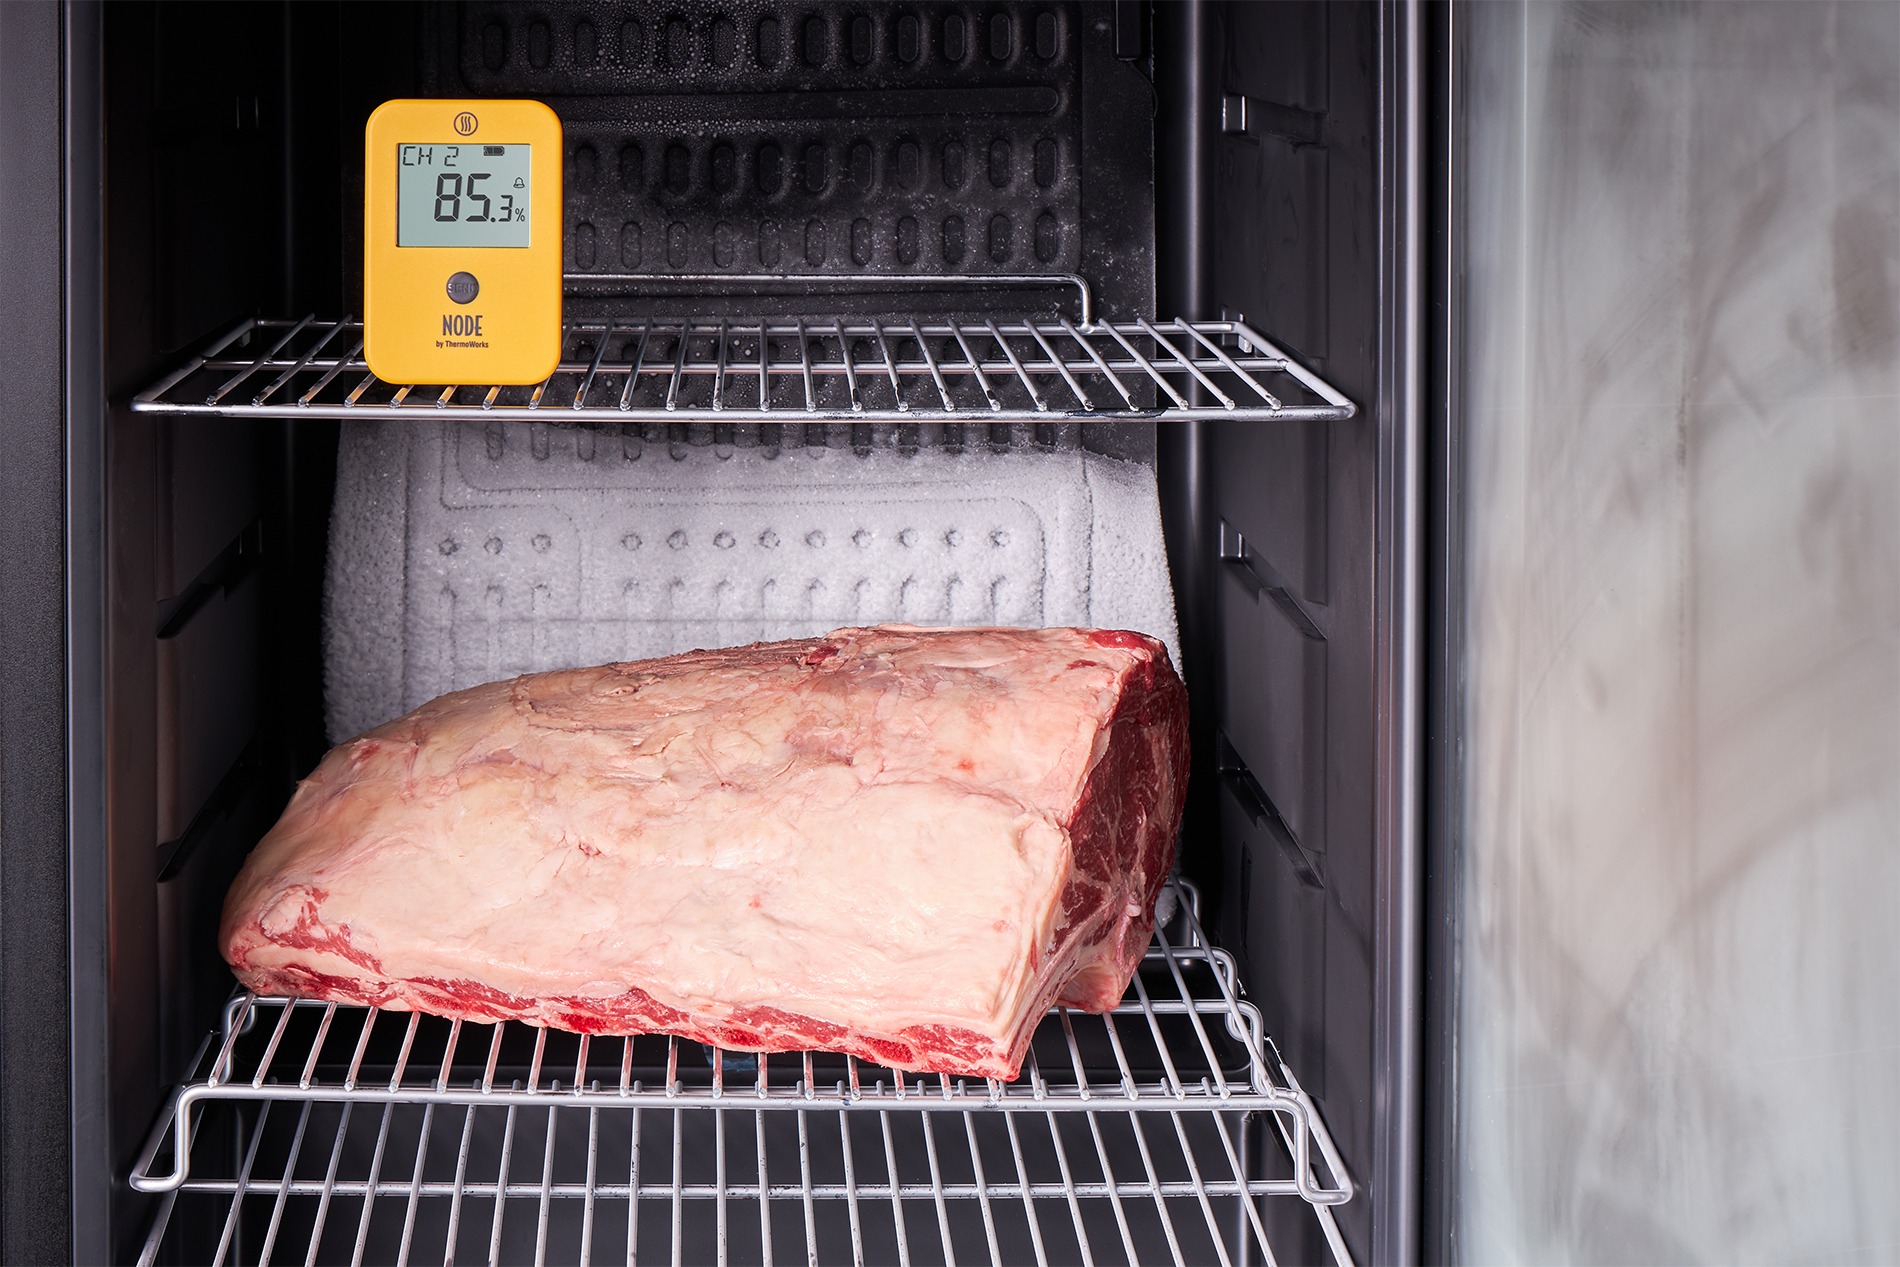 Meat in an aging fridge